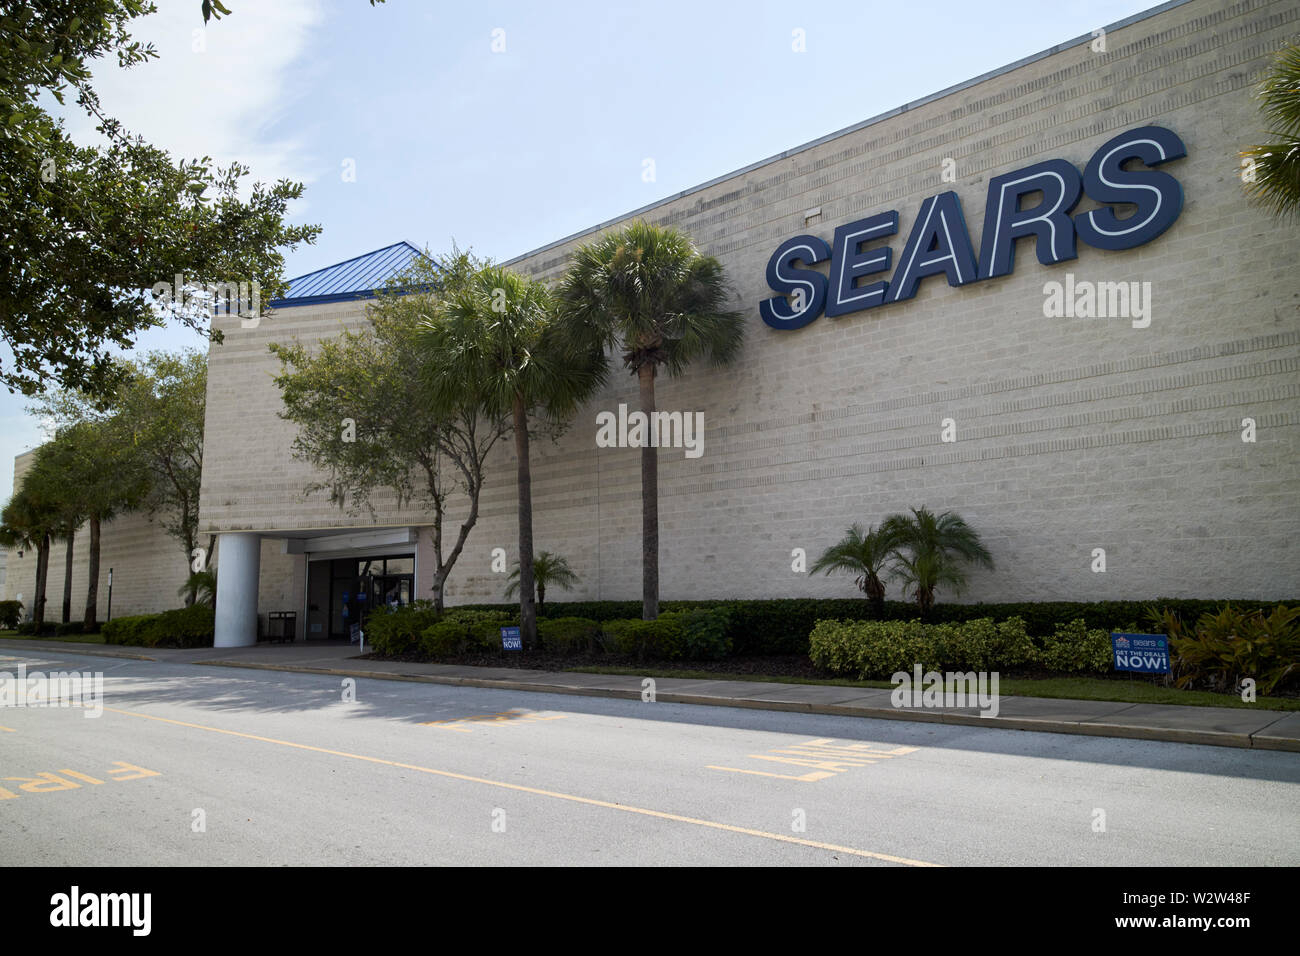 Sears store Ankermieter in der Florida Mall geschlossenen Shopping Mall Orlando Florida USA Vereinigte Staaten von Amerika Stockfoto